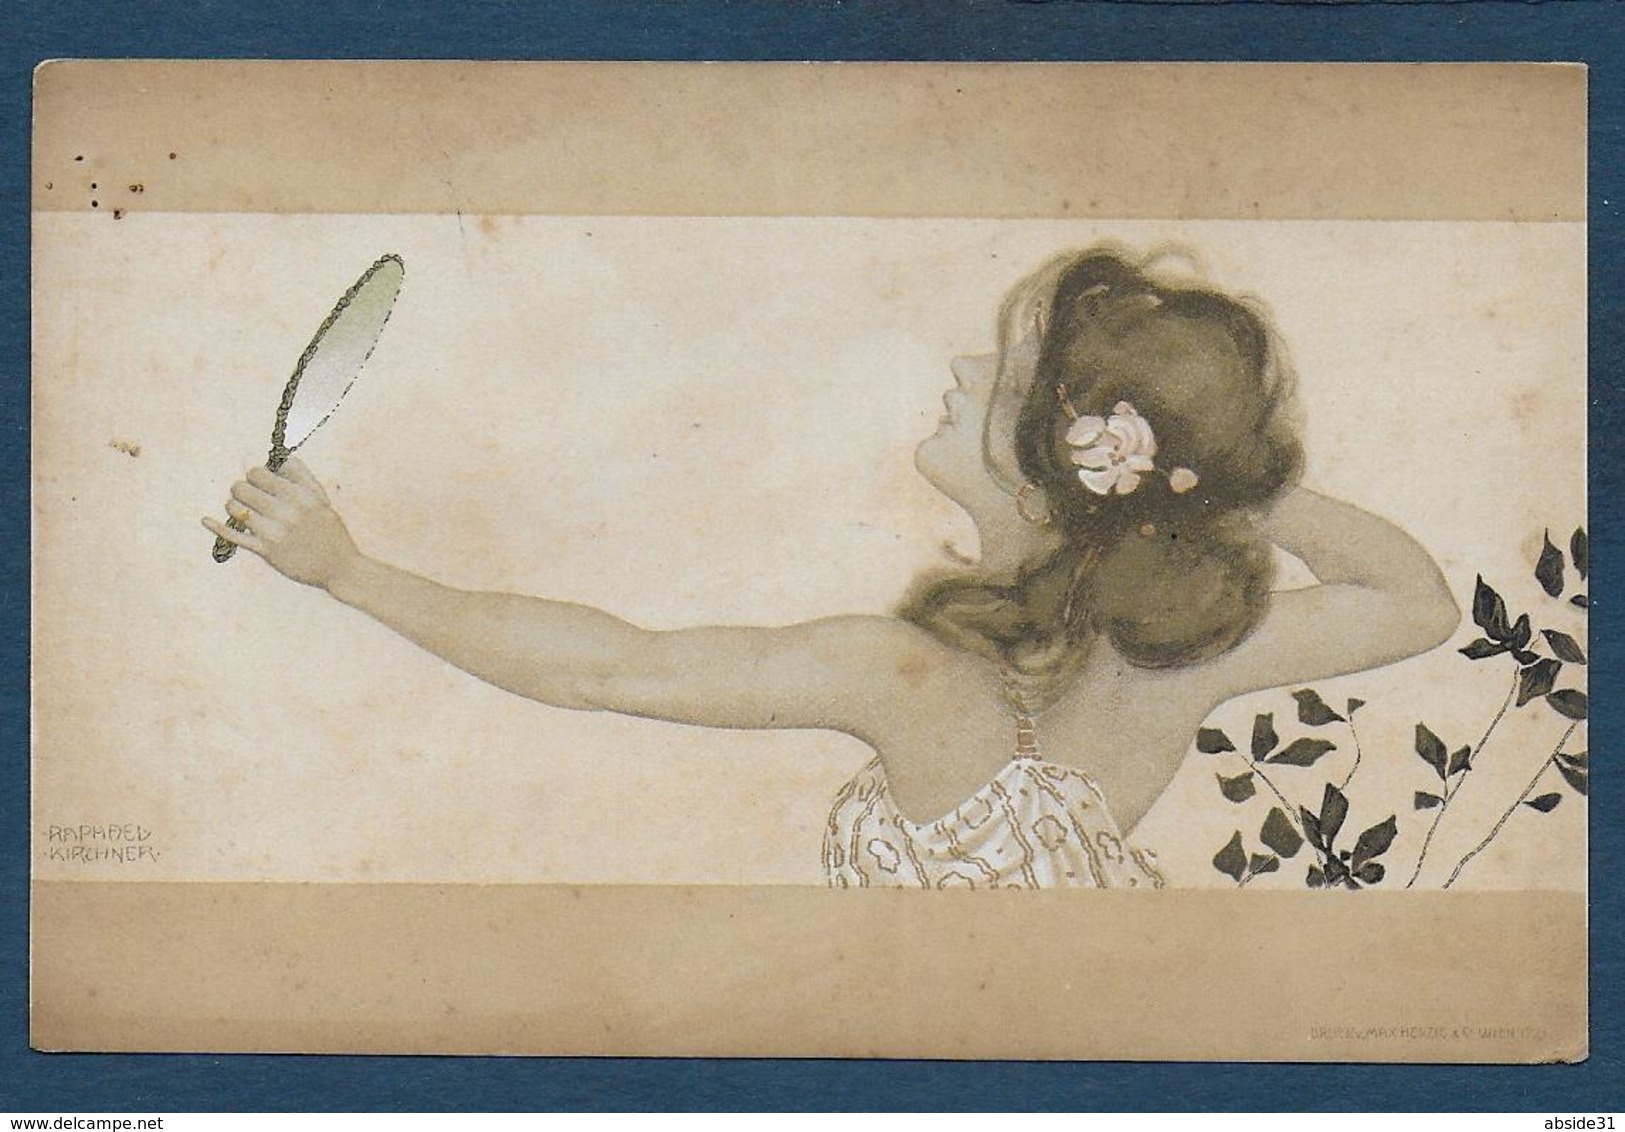 KIRCHNER - Femme Au Miroir - Kirchner, Raphael